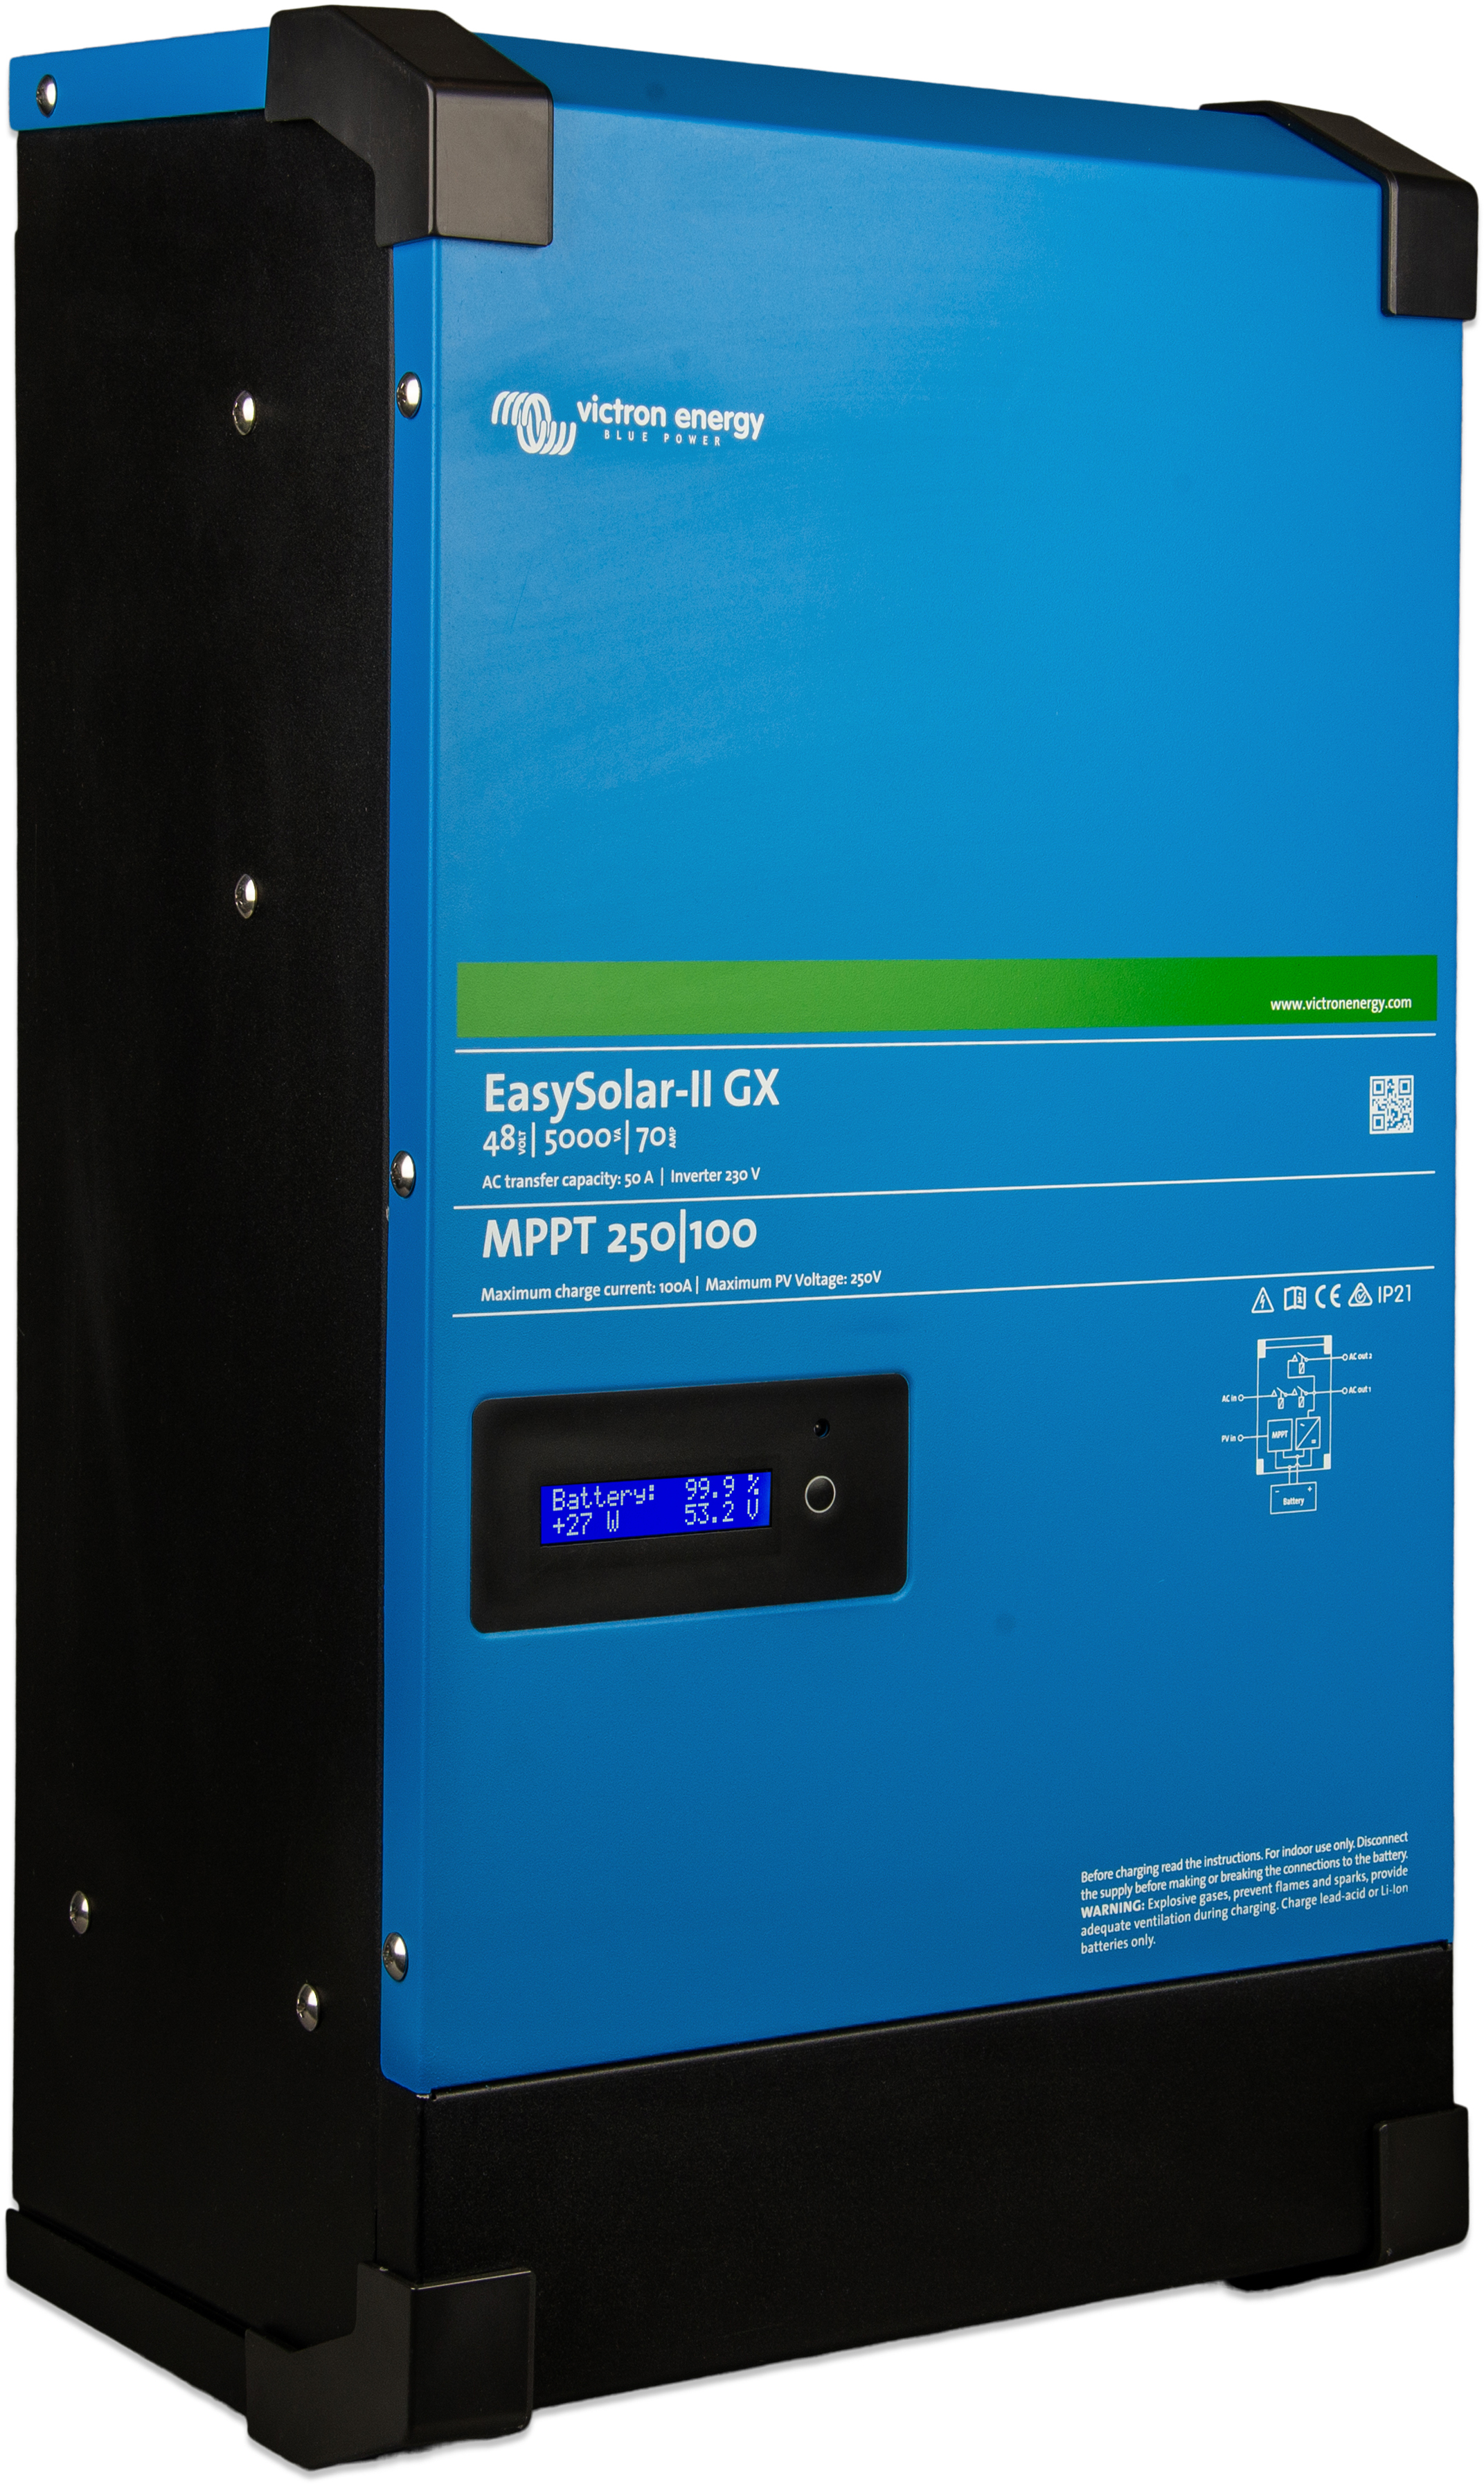 Инвертор гибридный Victron Energy EasySolar-II 48/5000/70-50 MPPT 250/100 GX отзывы - изображения 5